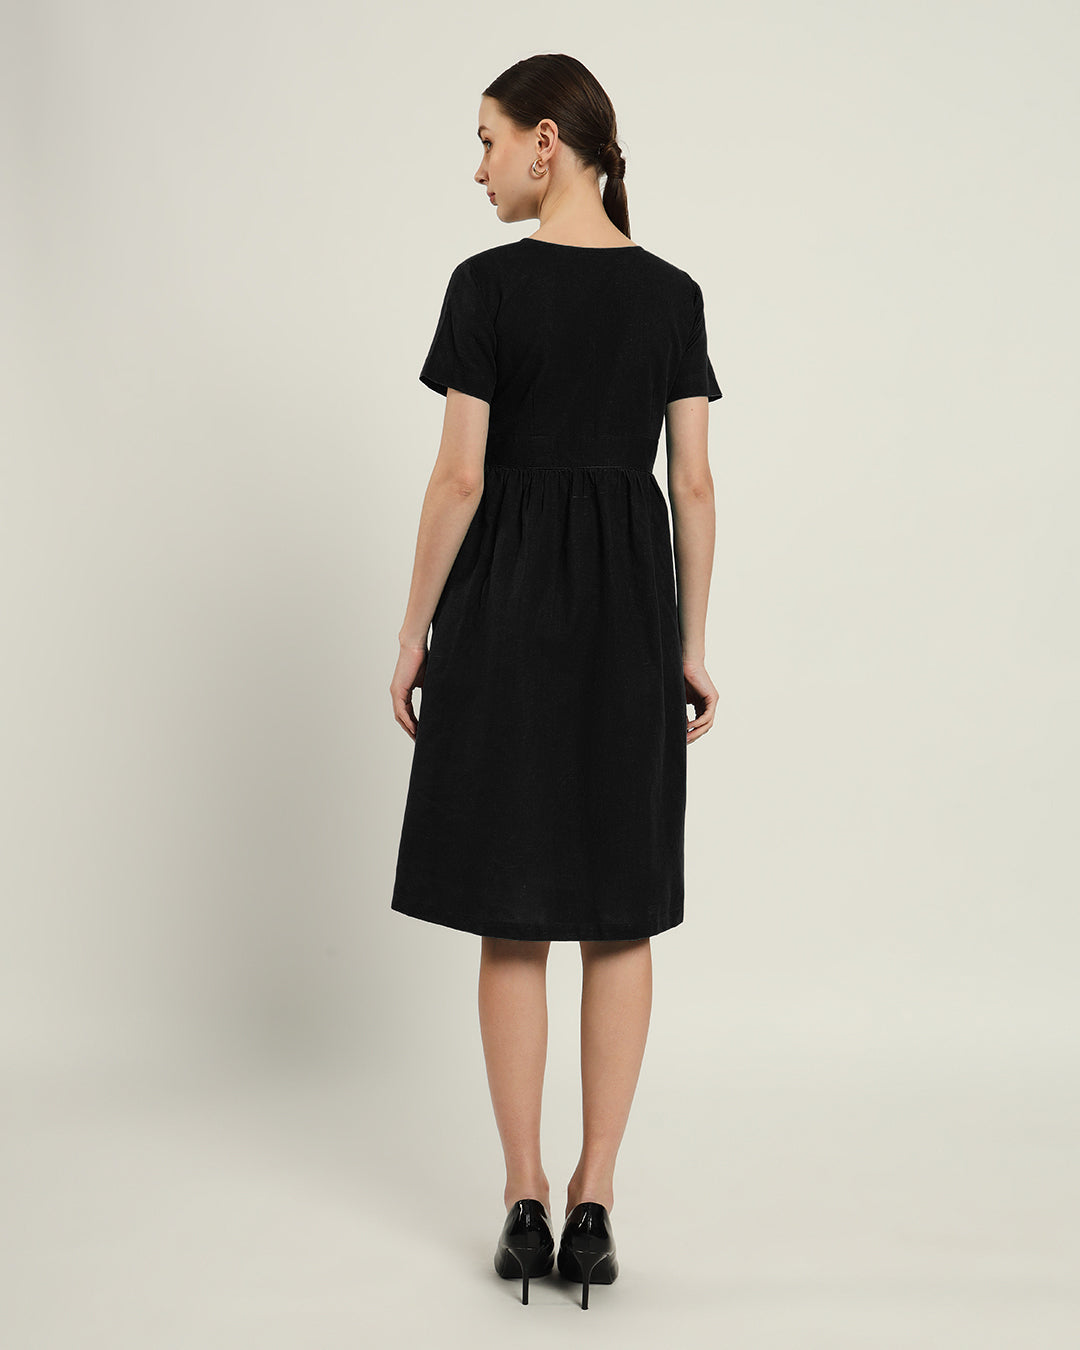 The Miyoshi Noir Dress